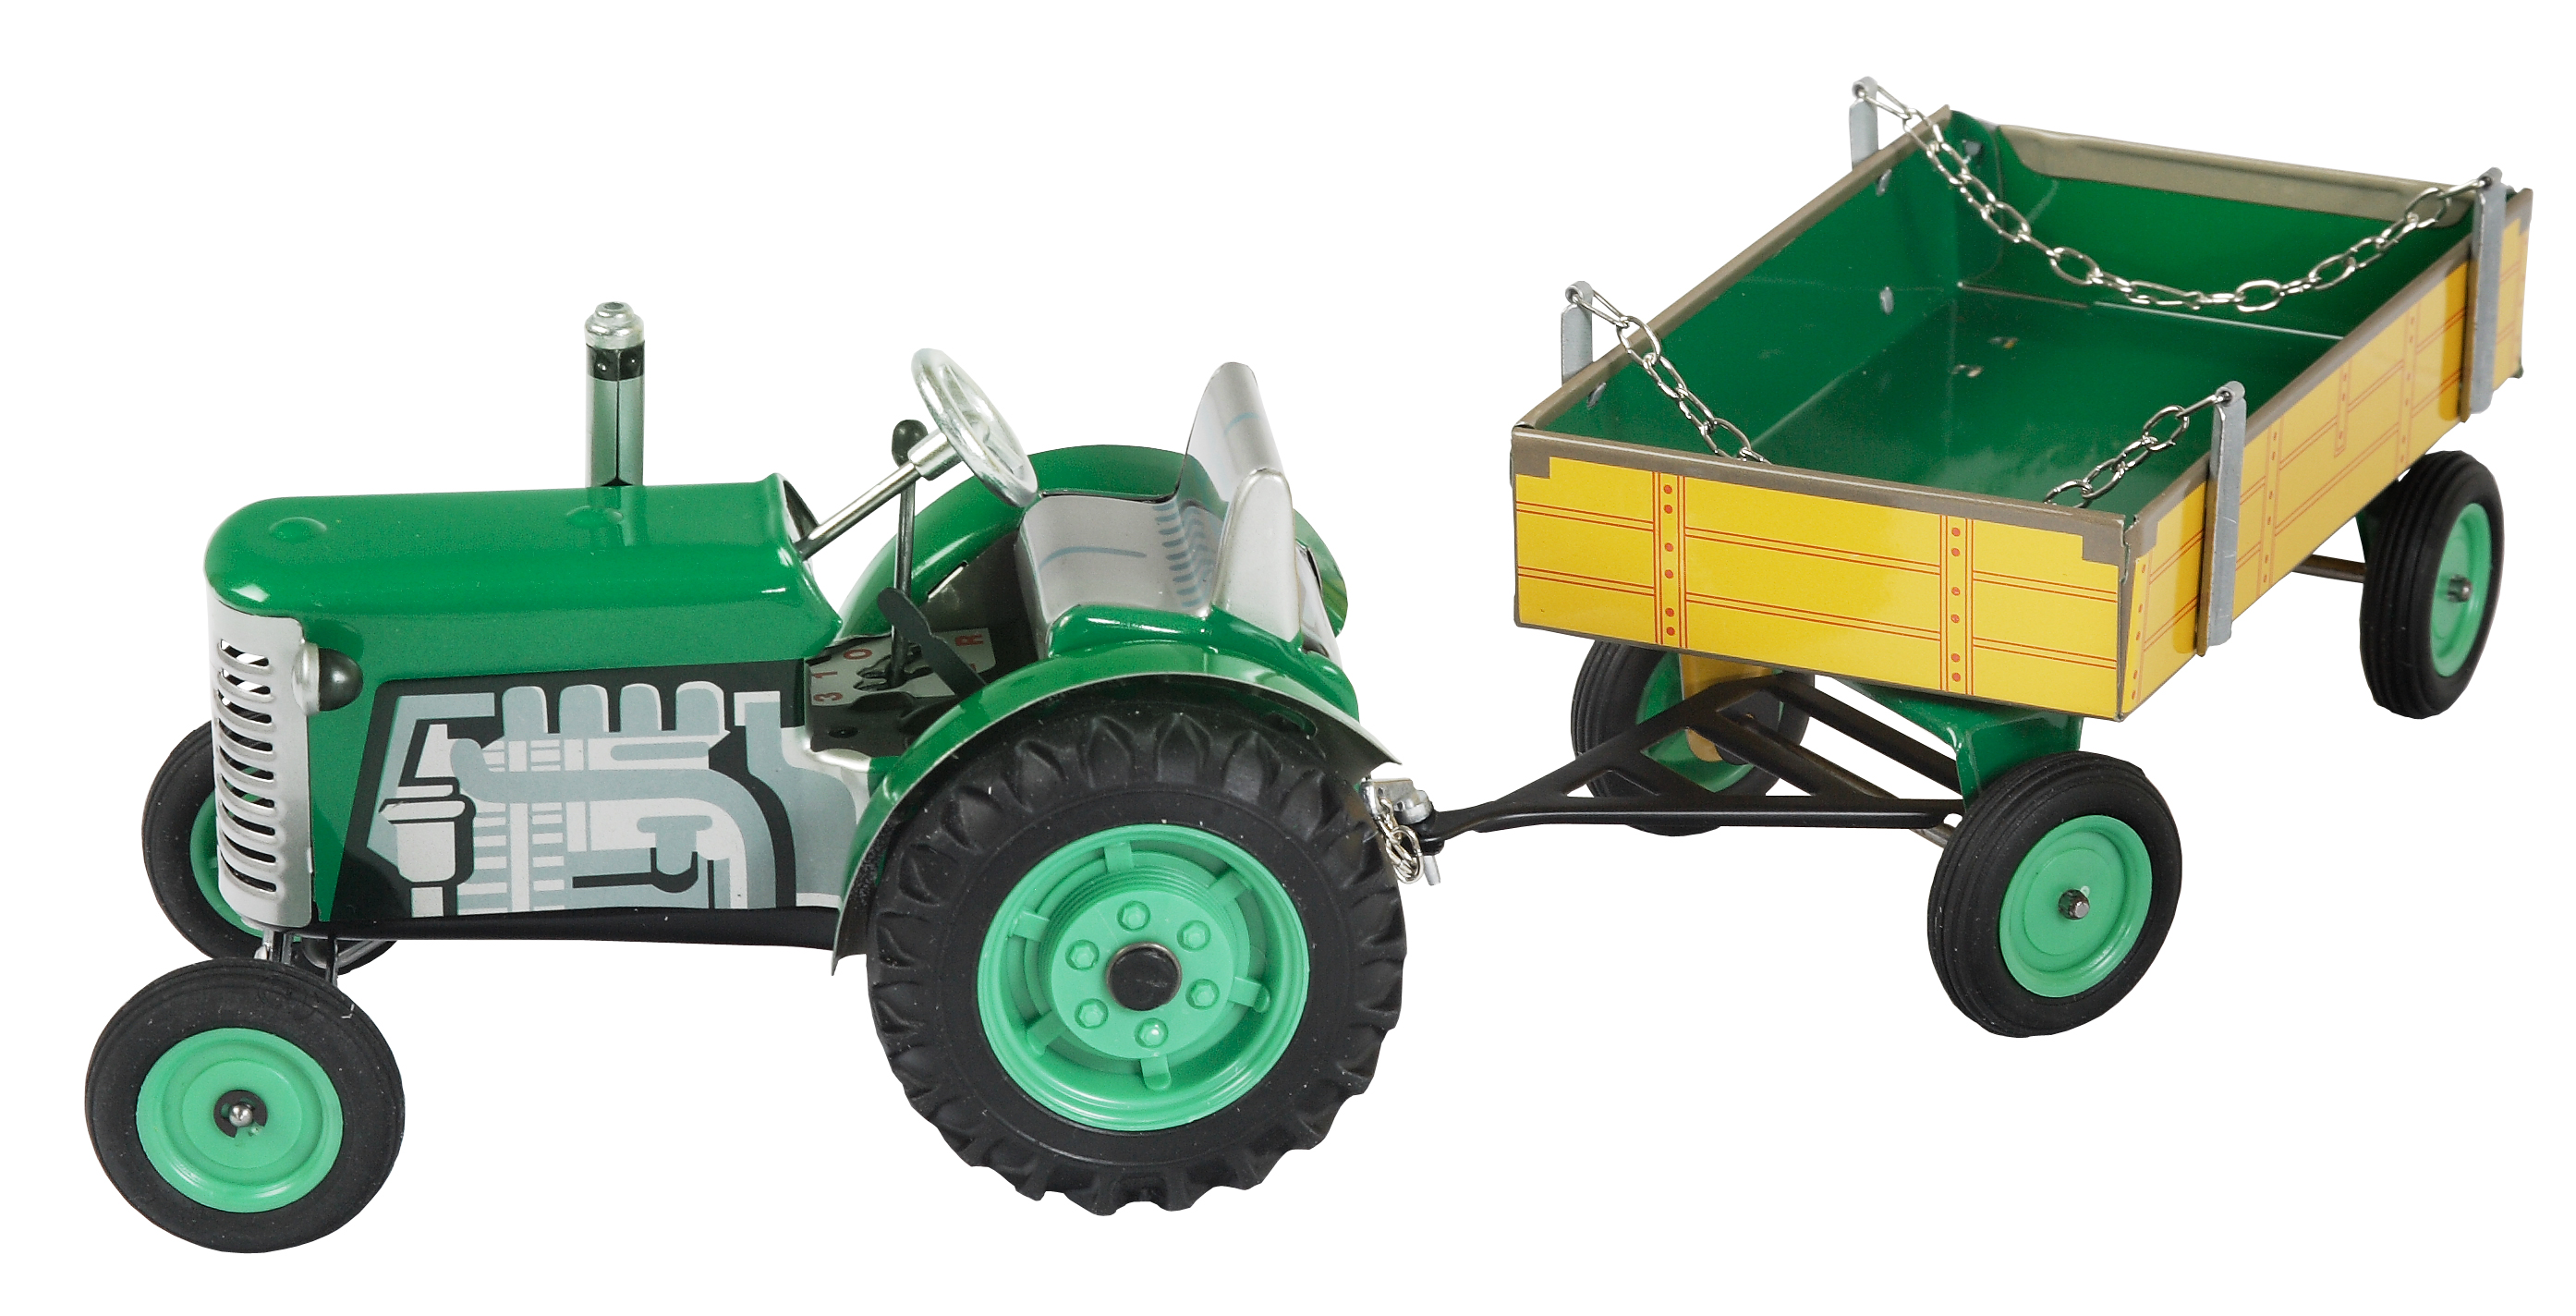 0395 traktor s vlekem_zelený